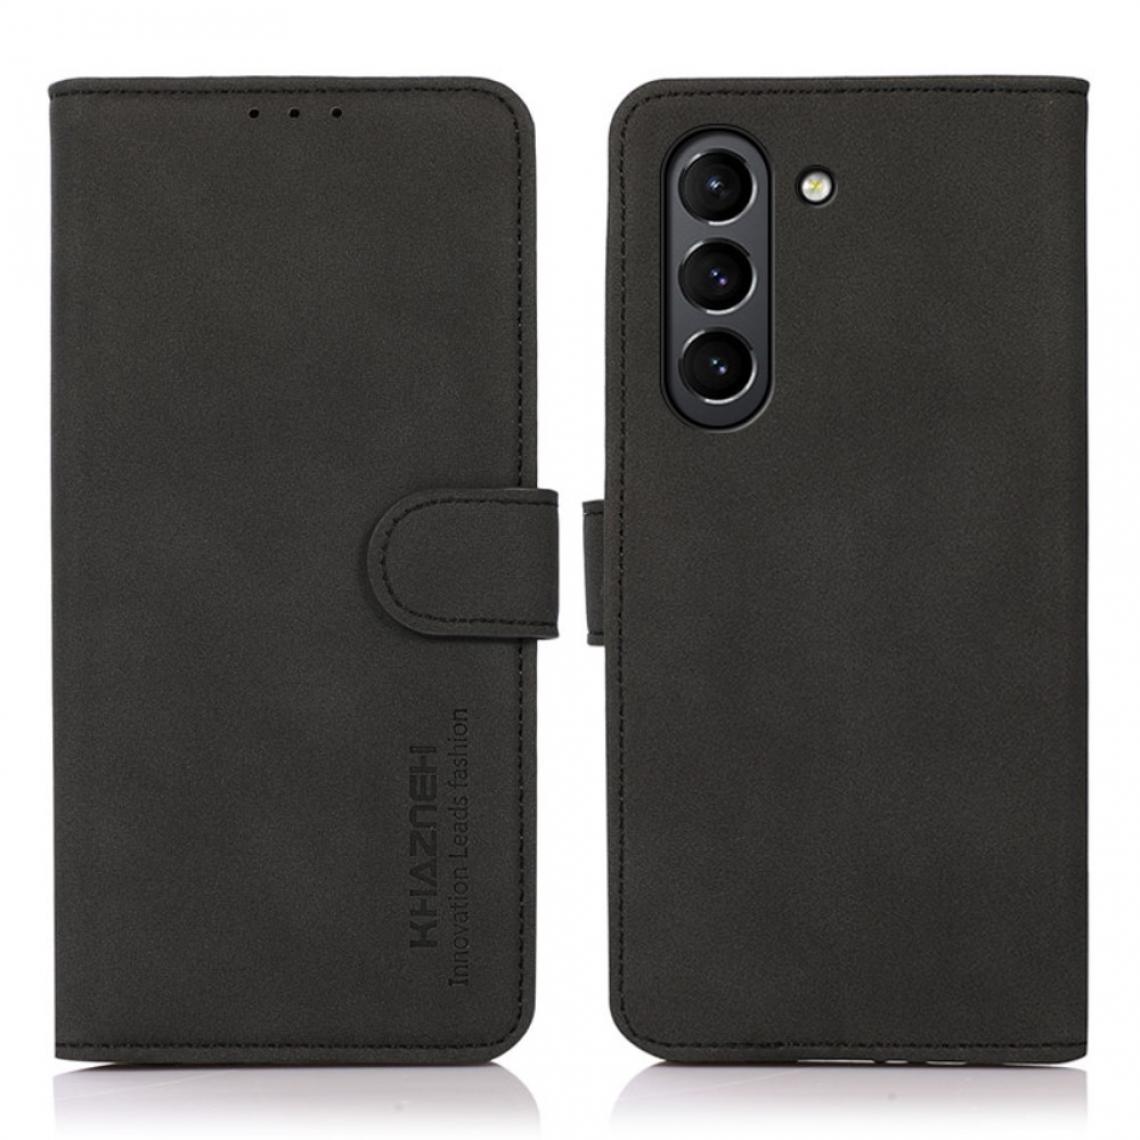 Other - Etui en PU avec support noir pour votre Samsung Galaxy S21 FE/S21 Fan Edition - Coque, étui smartphone